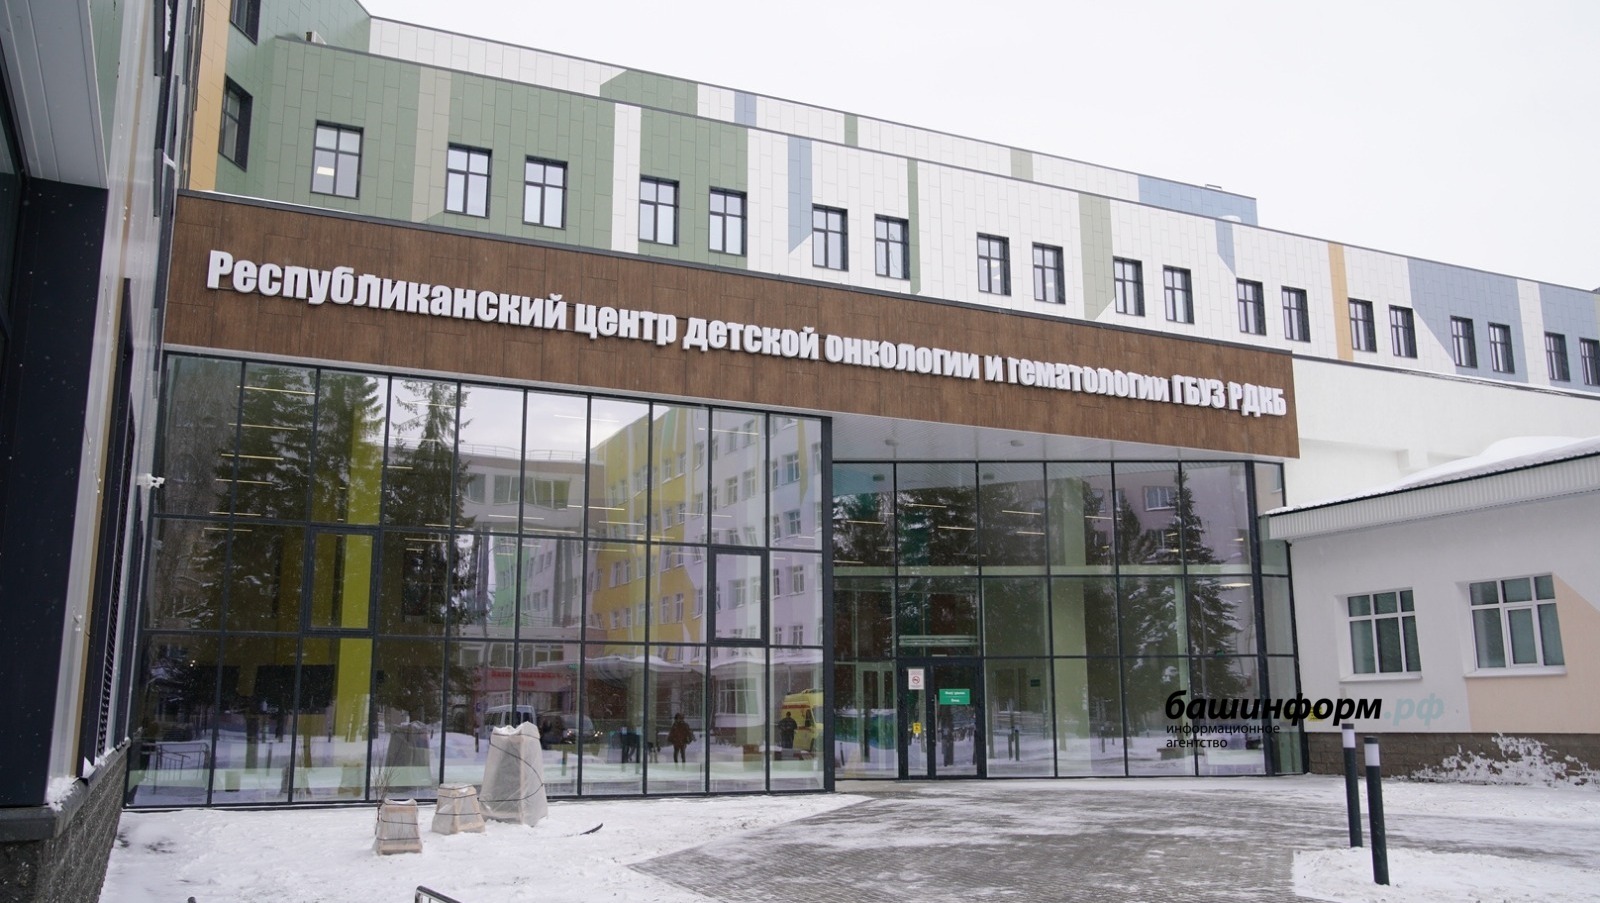 Владимиру Путину рассказали о новом Центре детской онкологии, открывшемся в Башкирии